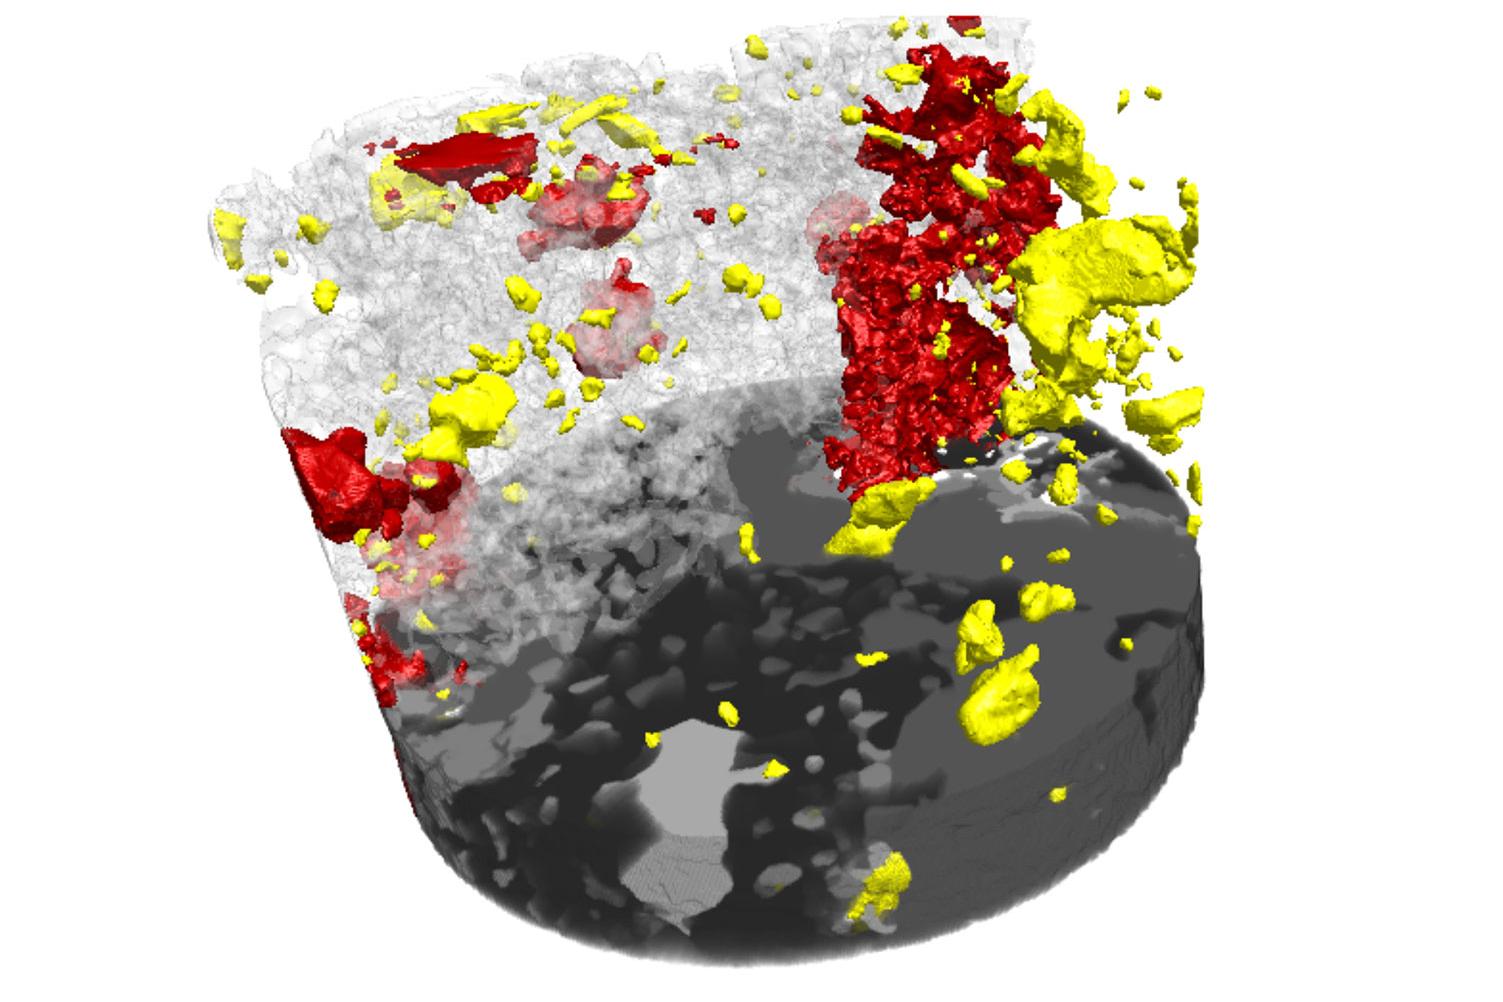 Metagabbro-Probe der Granulitfazies aus dem Lewisian, die mit der Software Mineralogic 3D analysiert wurde: quantitative Analyse von Mineralogie, Korngröße, -form und -verteilungen, Gefüge der mineralischen Materialien, Einschlussgefüge und vielem mehr vor der zerstörenden Probenpräparation.